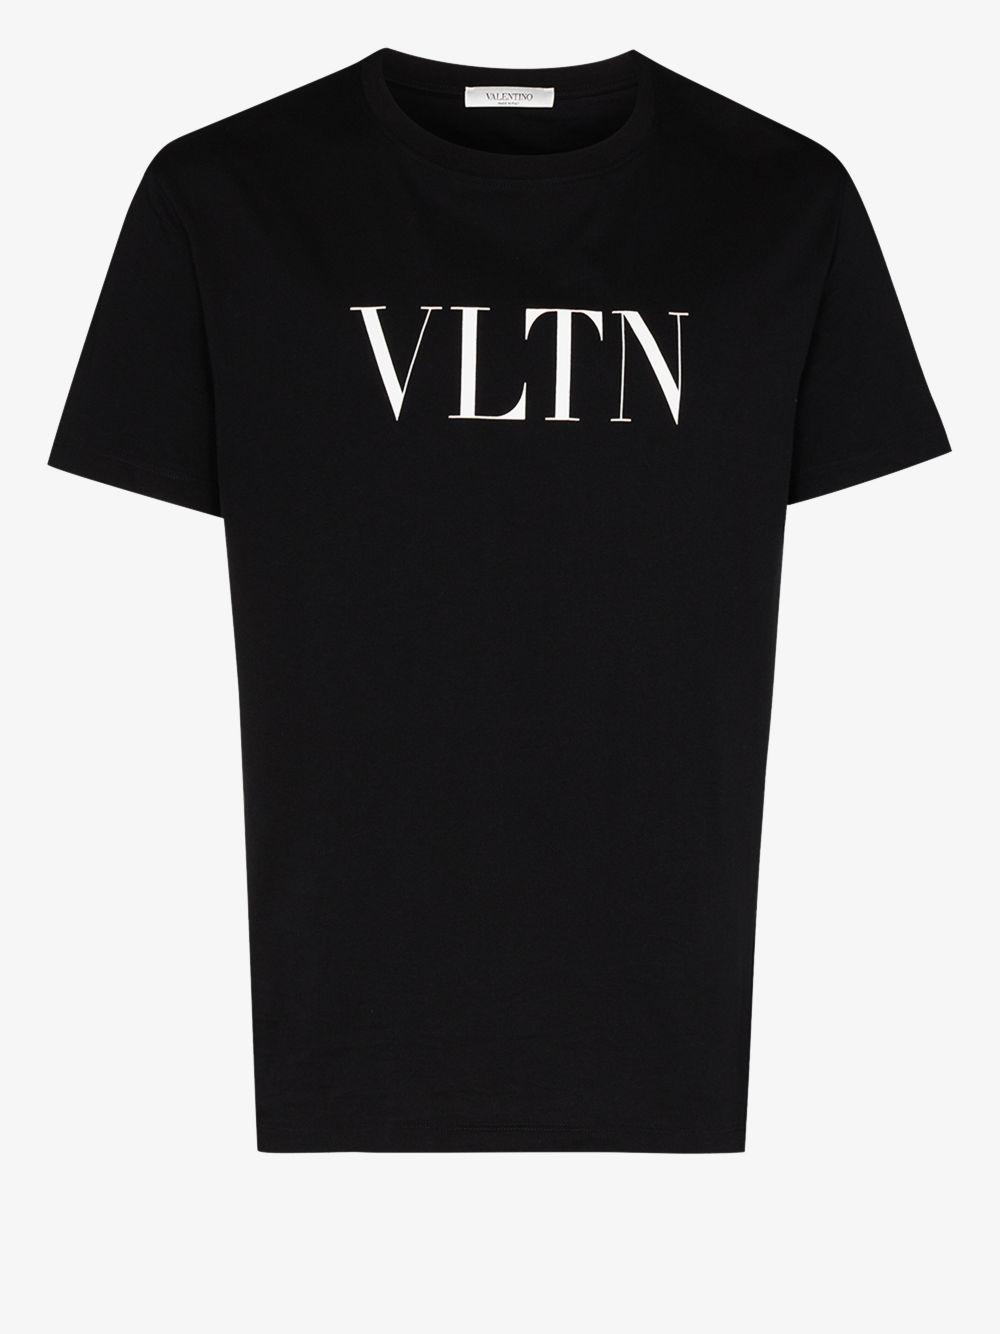 Valentino Cotton Vltn Logo T-shirt in Black for Men - Lyst